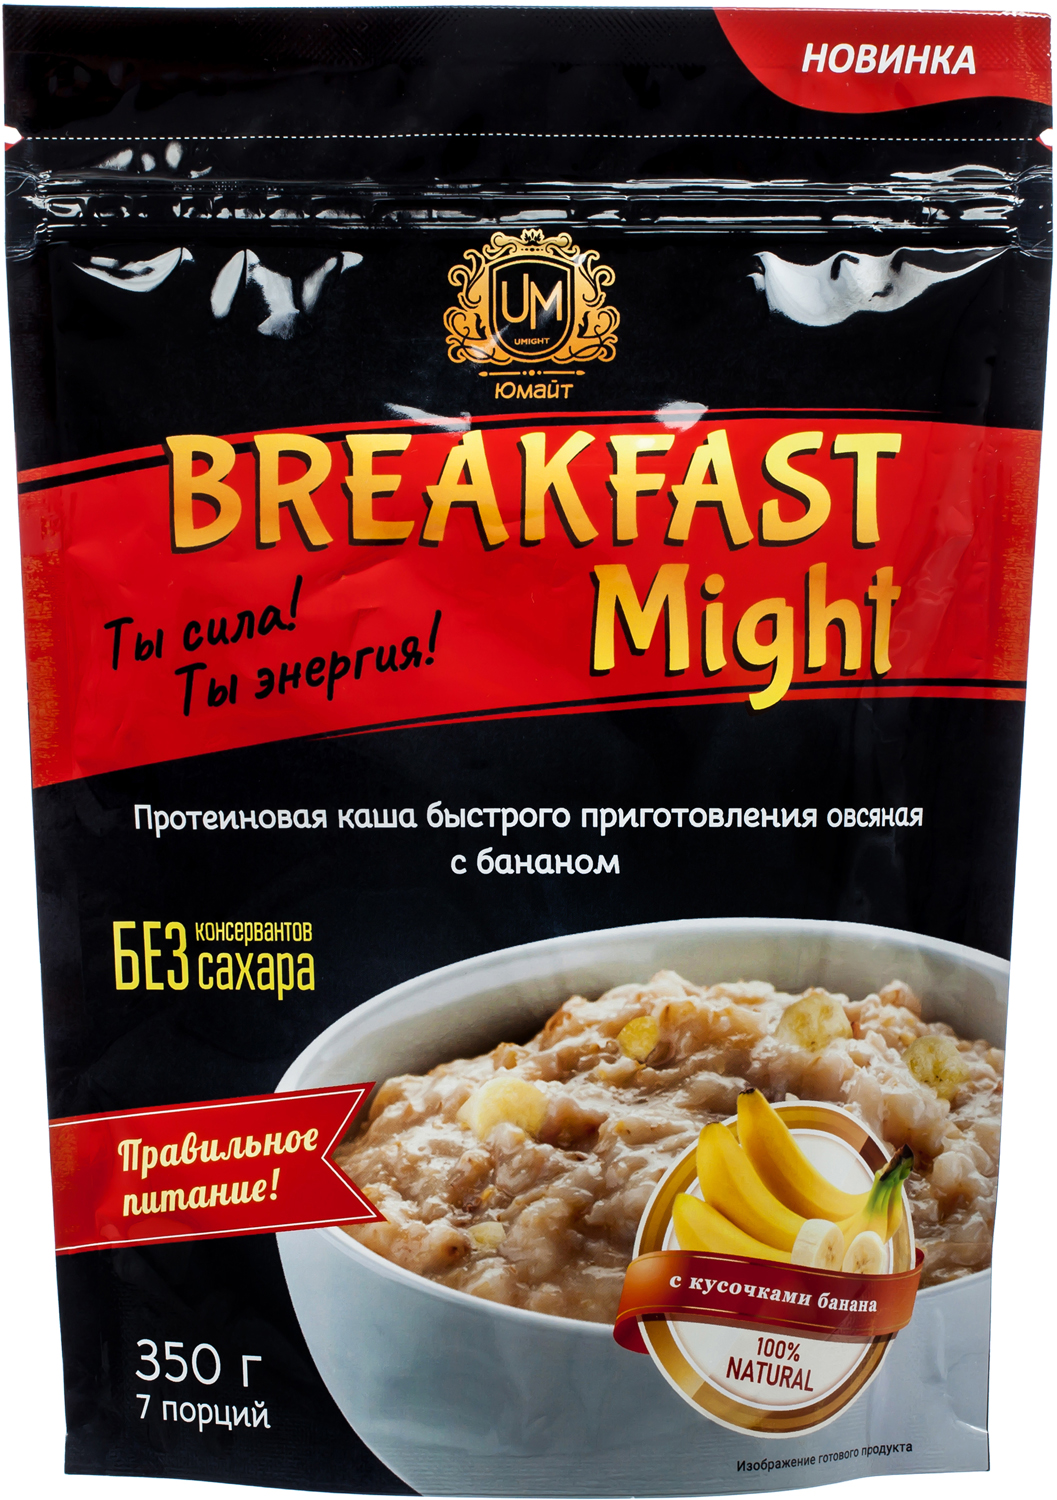 фото Протеиновая каша быстрого приготовления овсяная "breakfast might" с бананом, 350г ооо "юмайт"